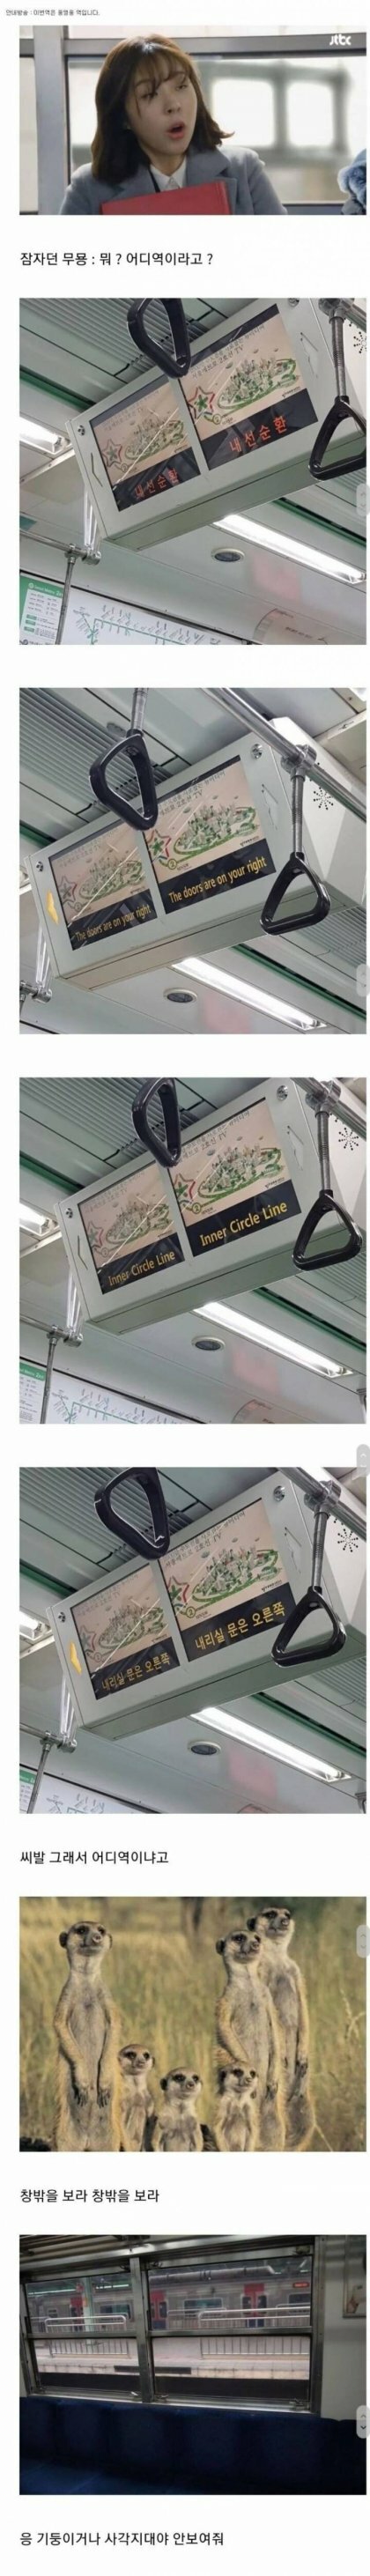 한국지하철의 최대단점